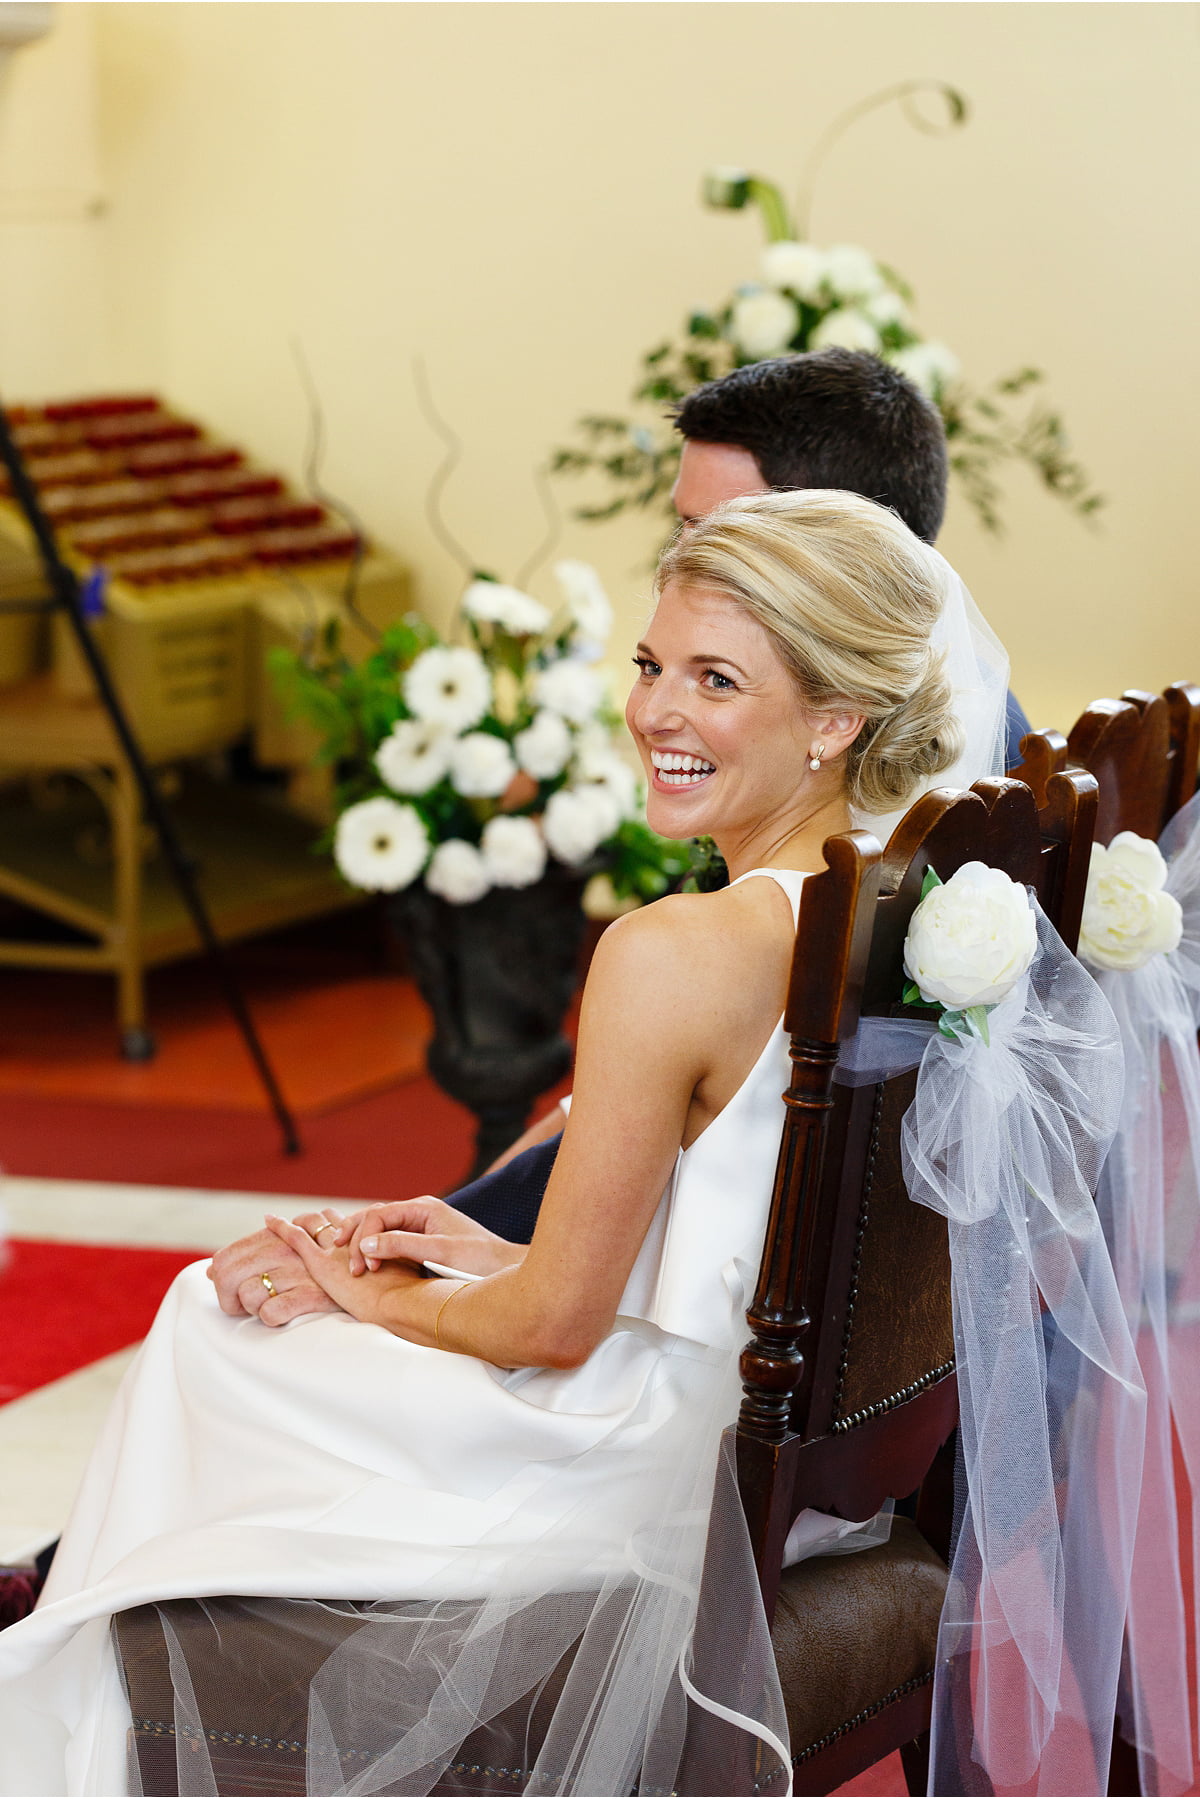 beaming bride glances over her shoulder during wedding cerrmony